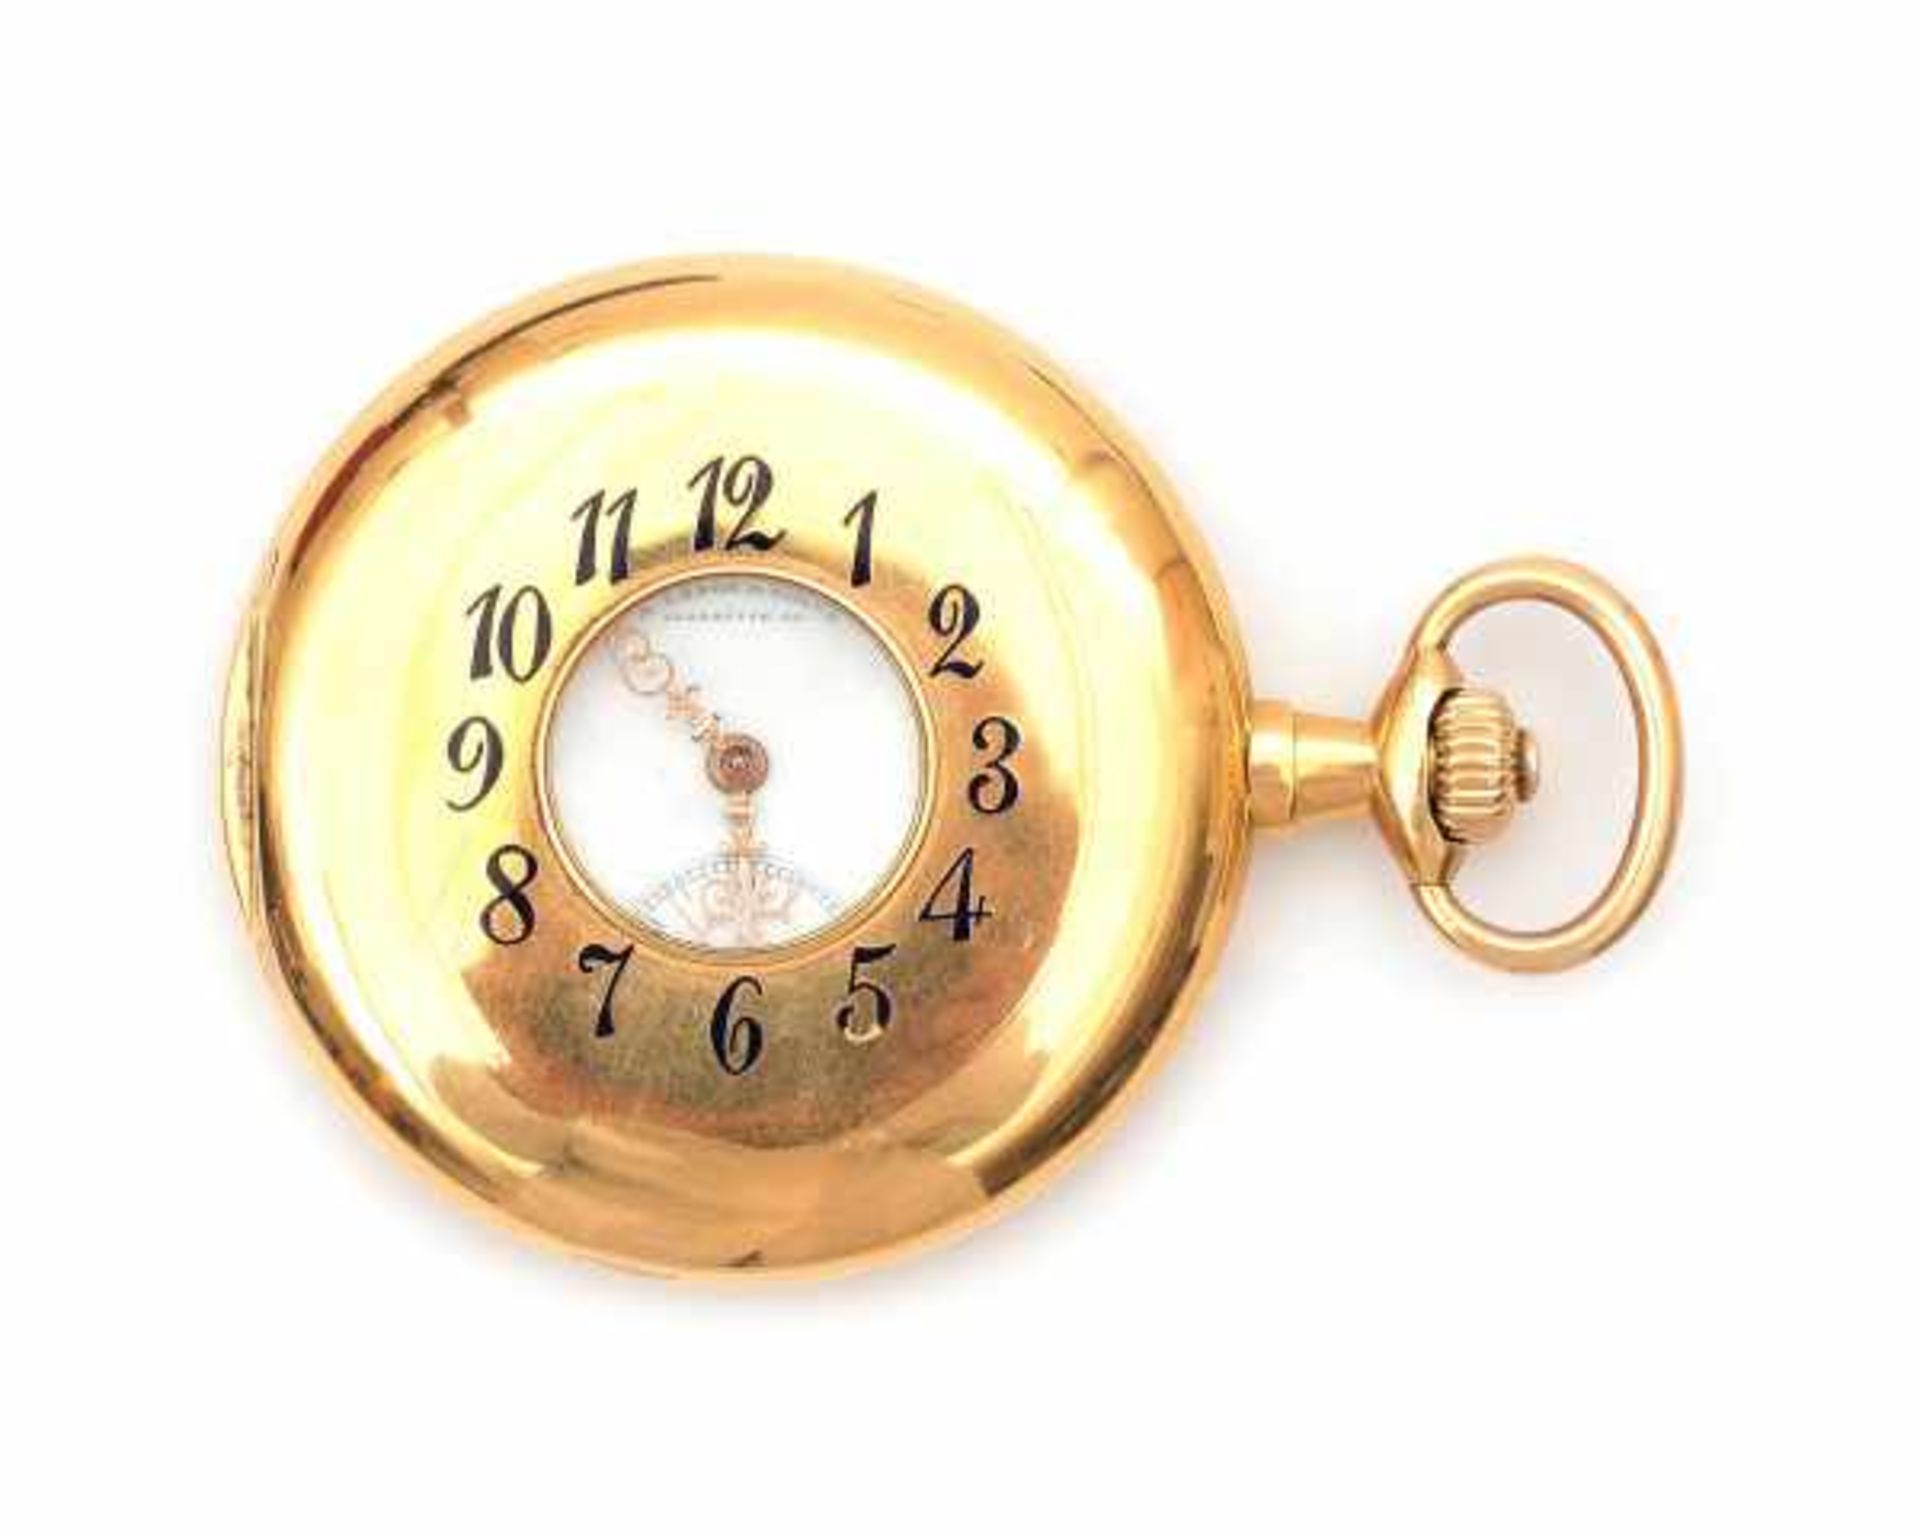 Lange und Söhne Glashütte. Half savonette pocket watch in 14 carat gold incl.a watch chain and